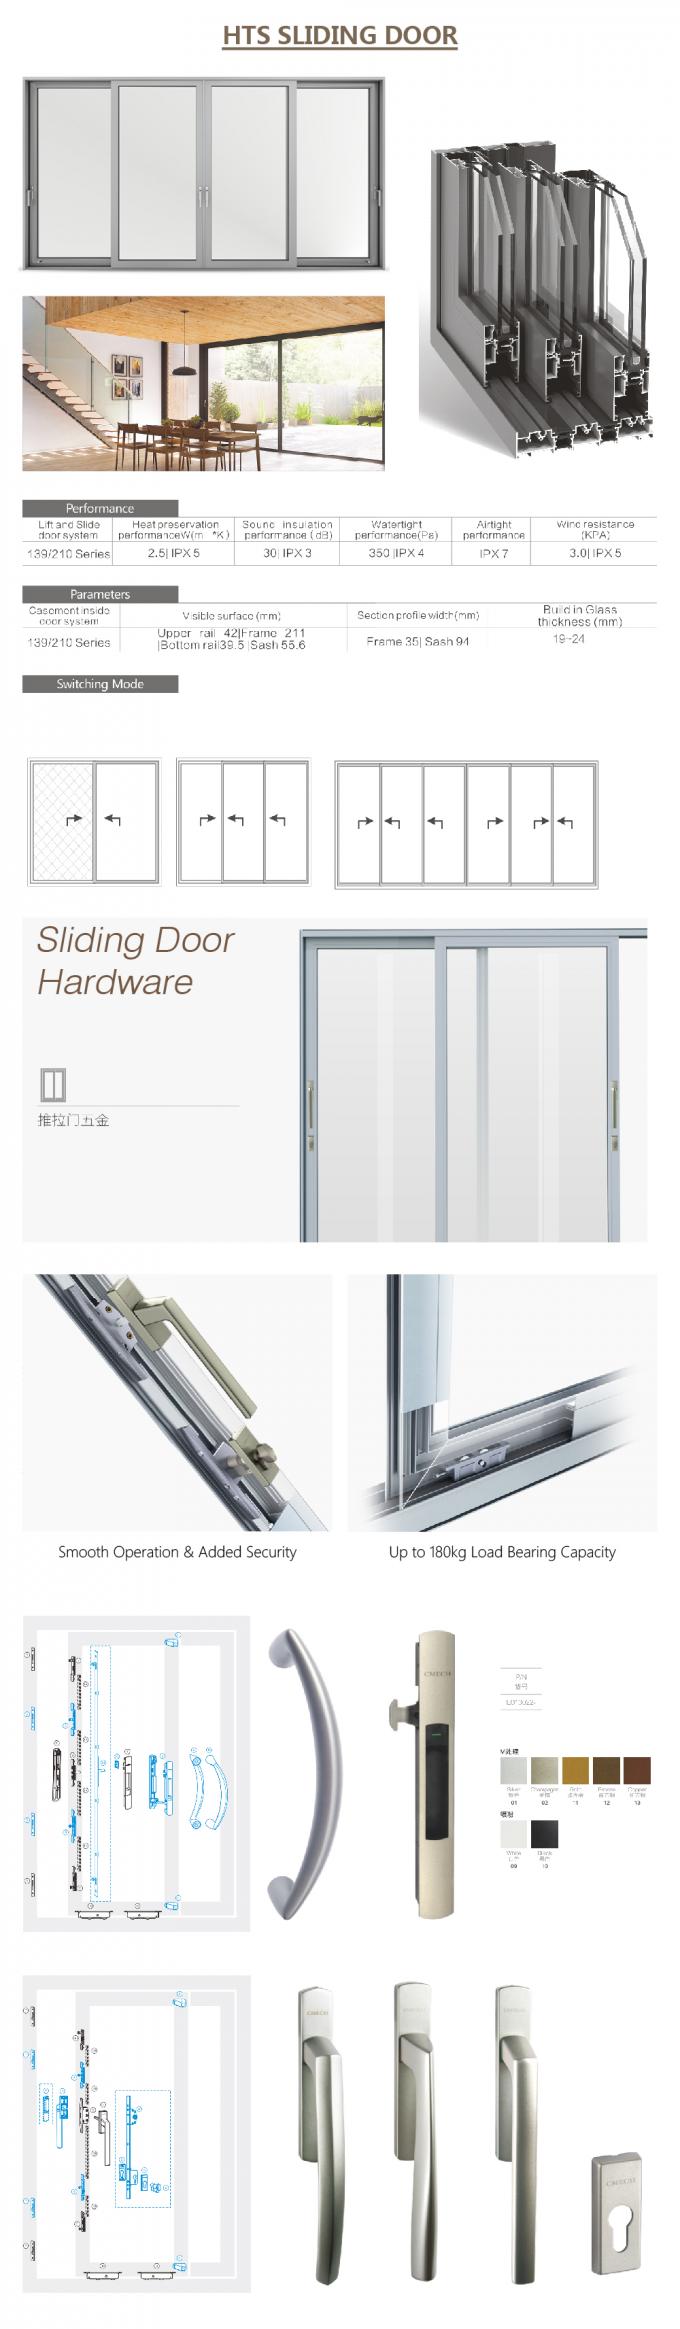 алюминиевые сползая двери патио, внутренние складывая раздвижные двери, внешние раздвижные двери, детали раздвижной двери detailAluminium раздвижной двери